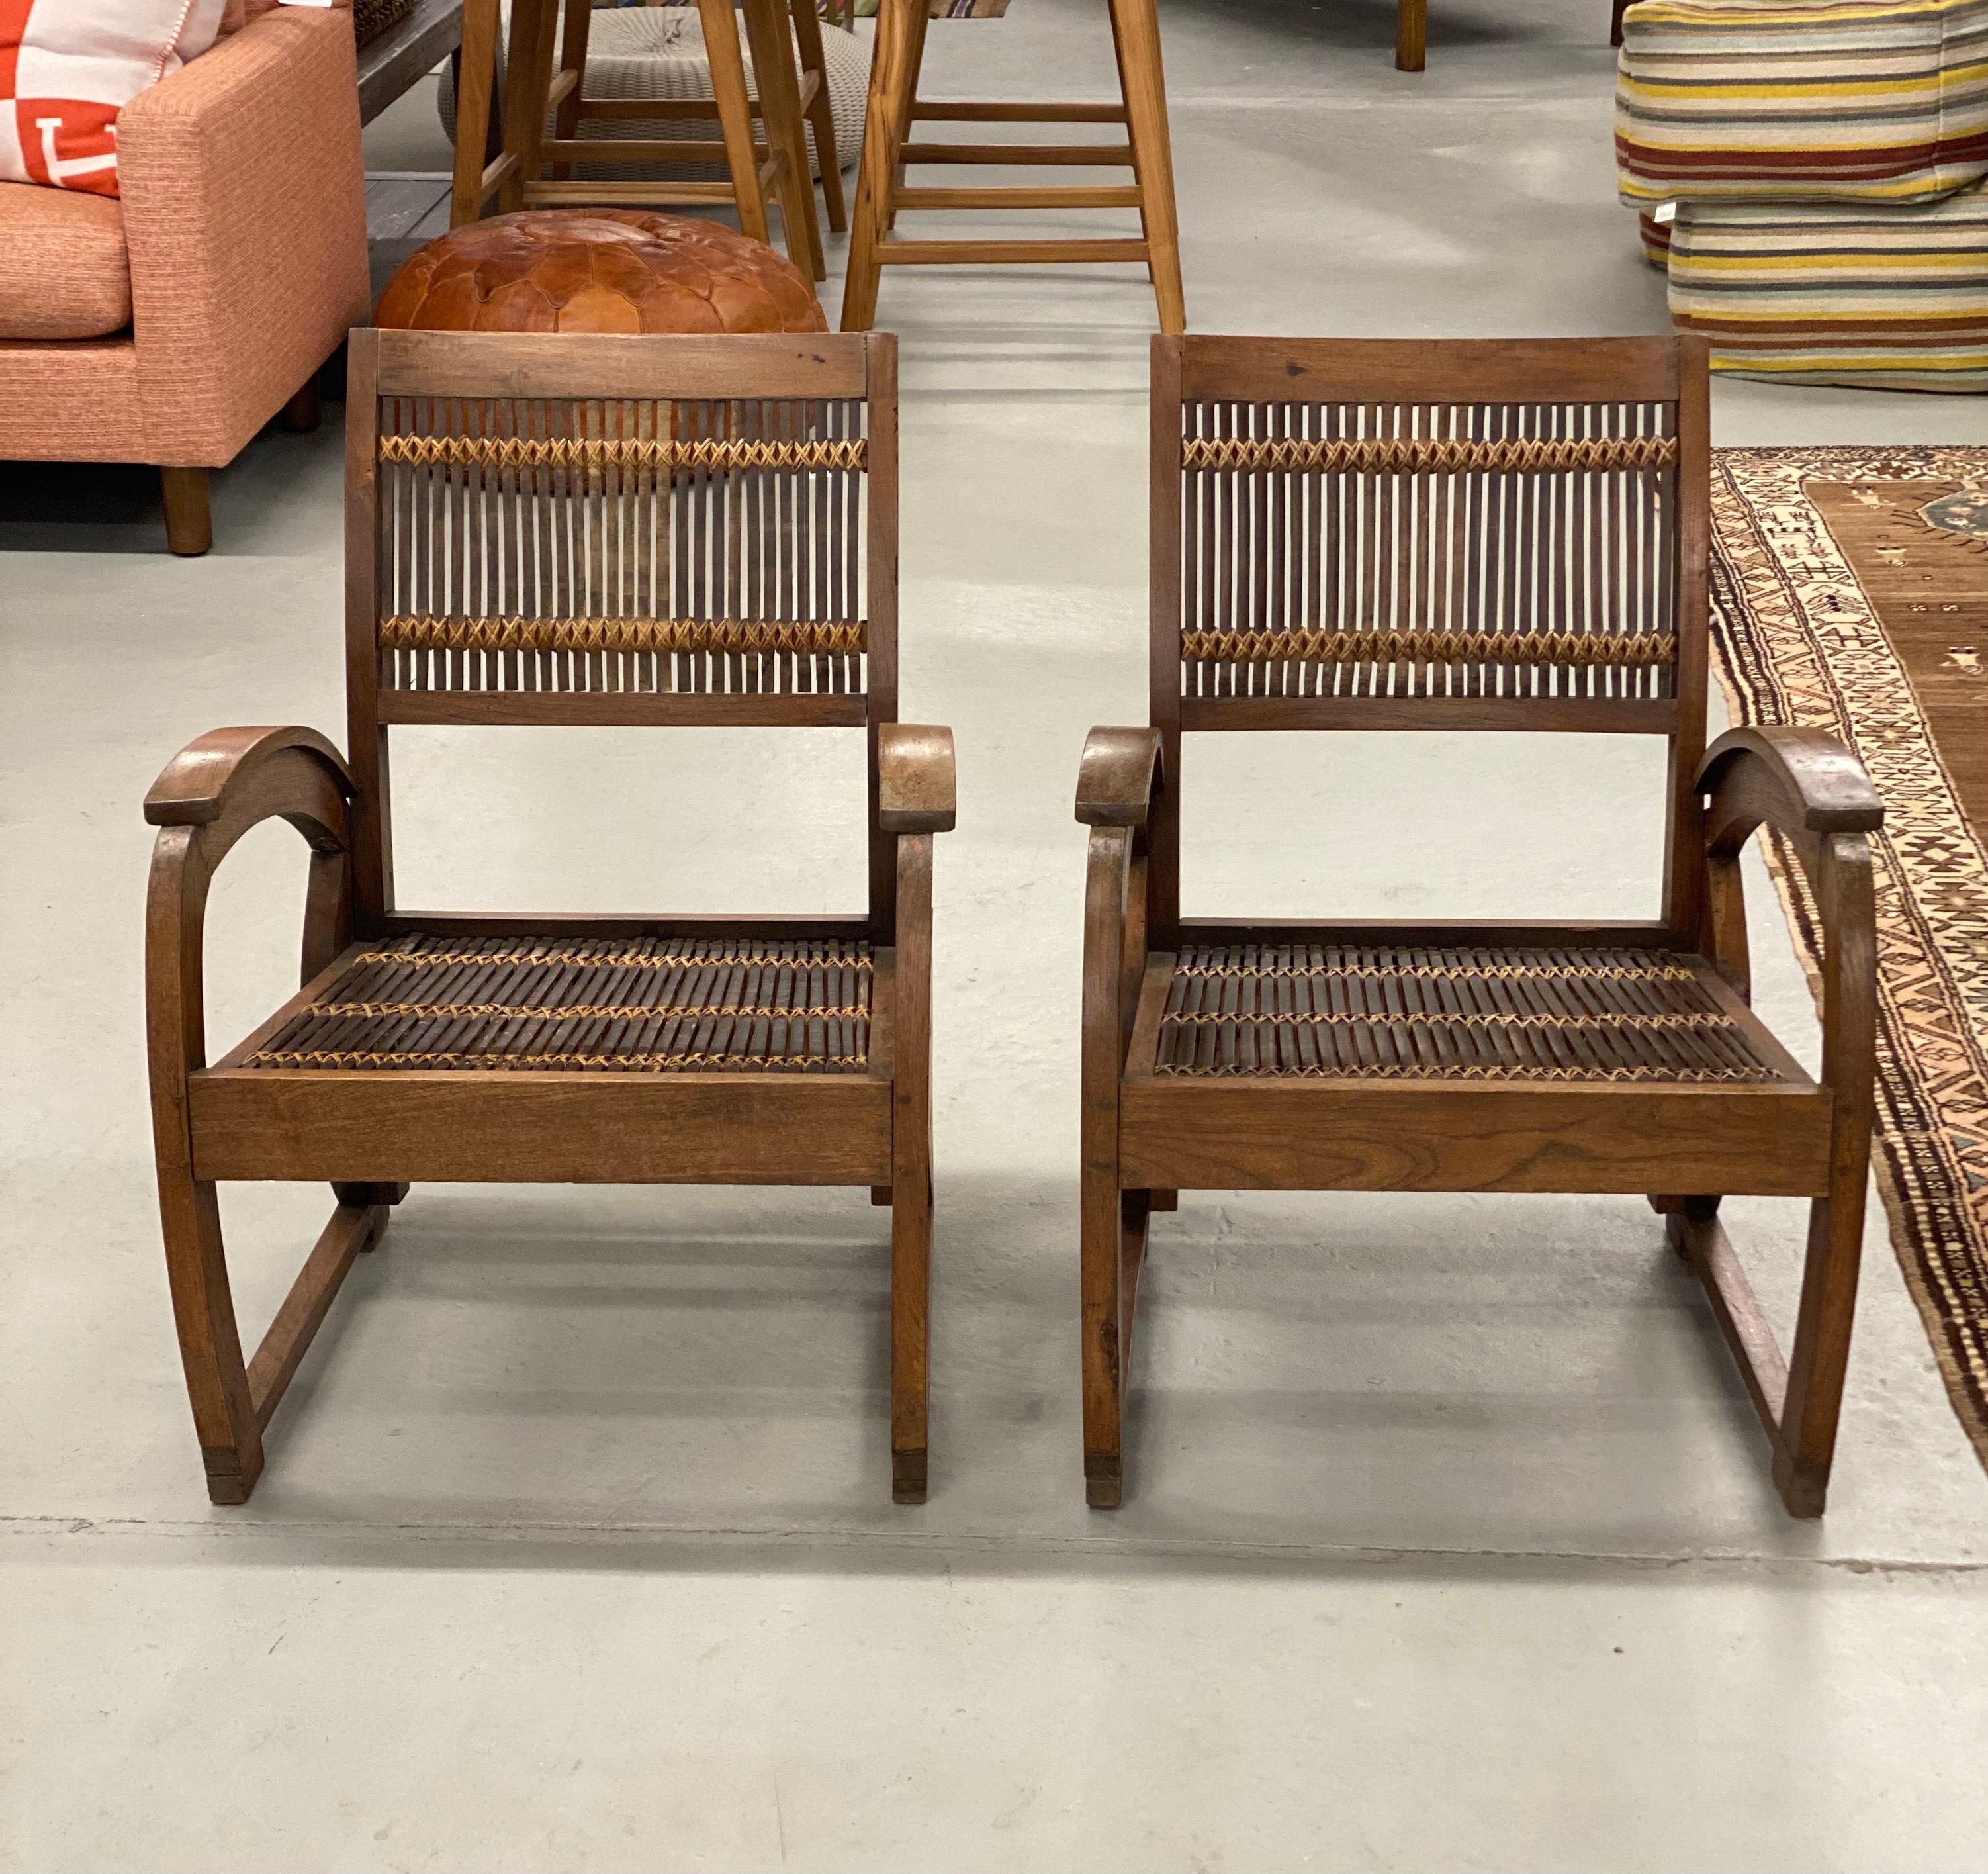 Pair of vintage Balinese Rattan chairs

Measures: 29